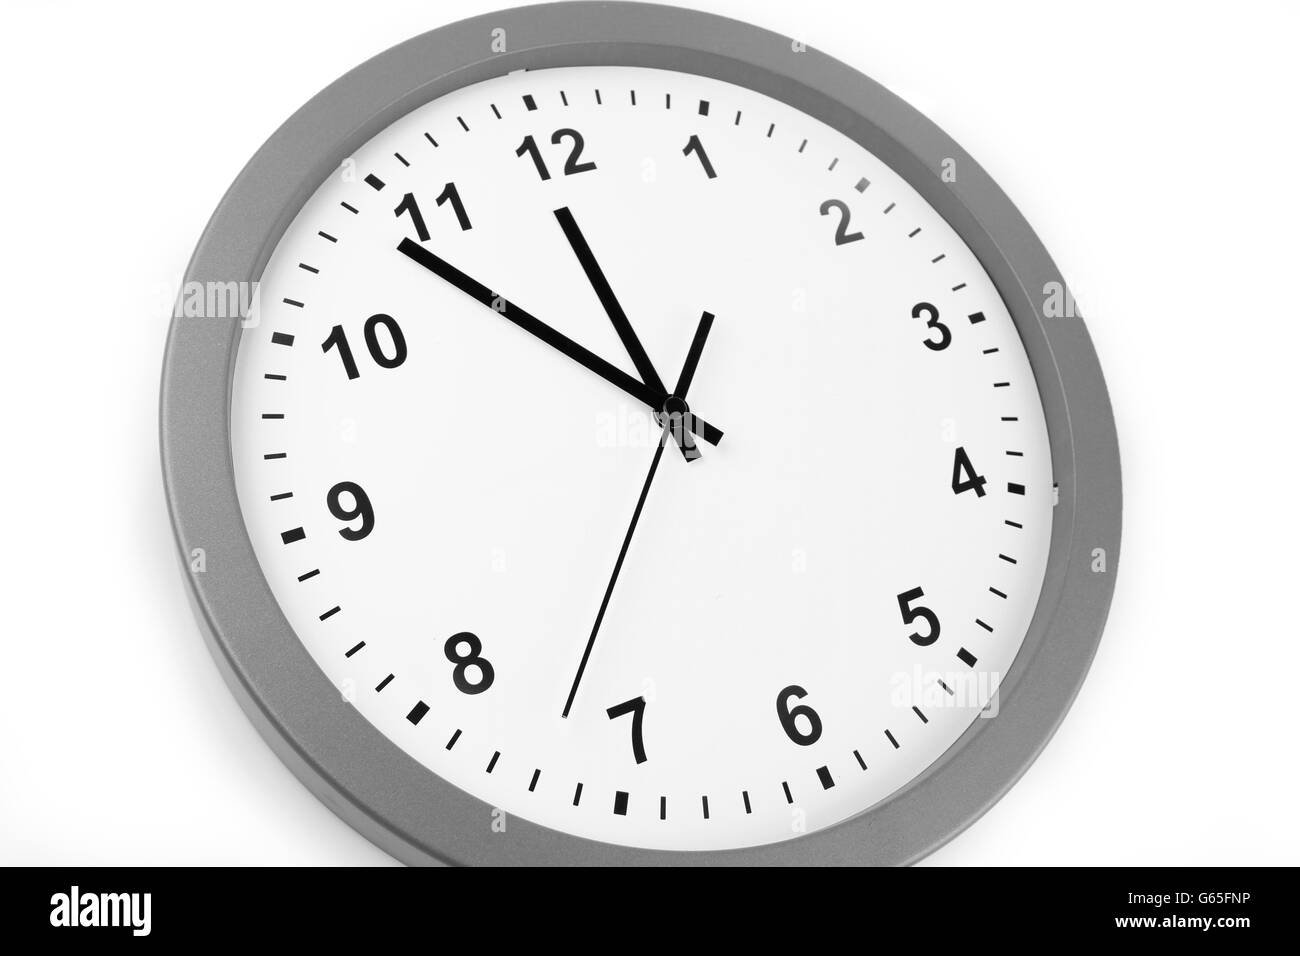 Clock isolated on plain background Stock Photo